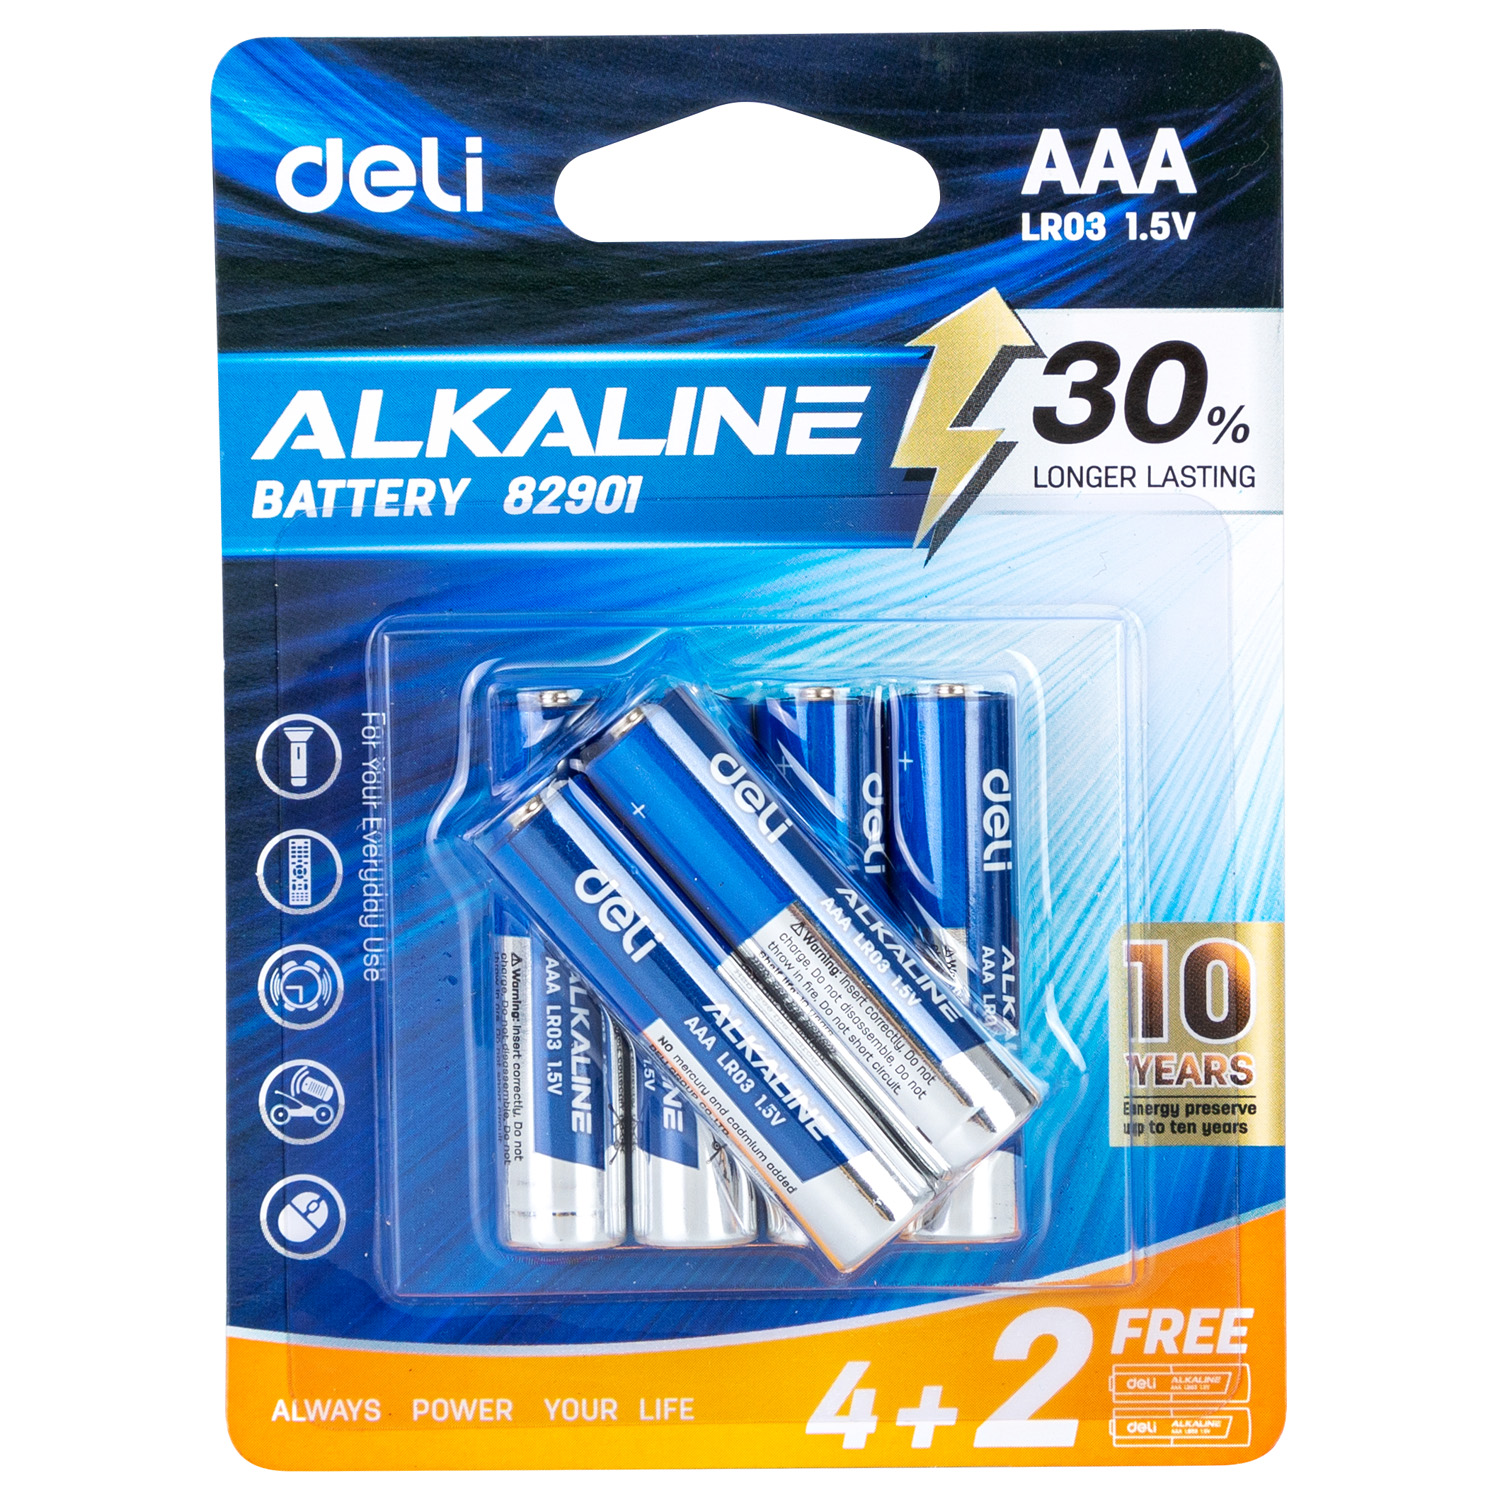 Deli-E82901 Alkaline Battery